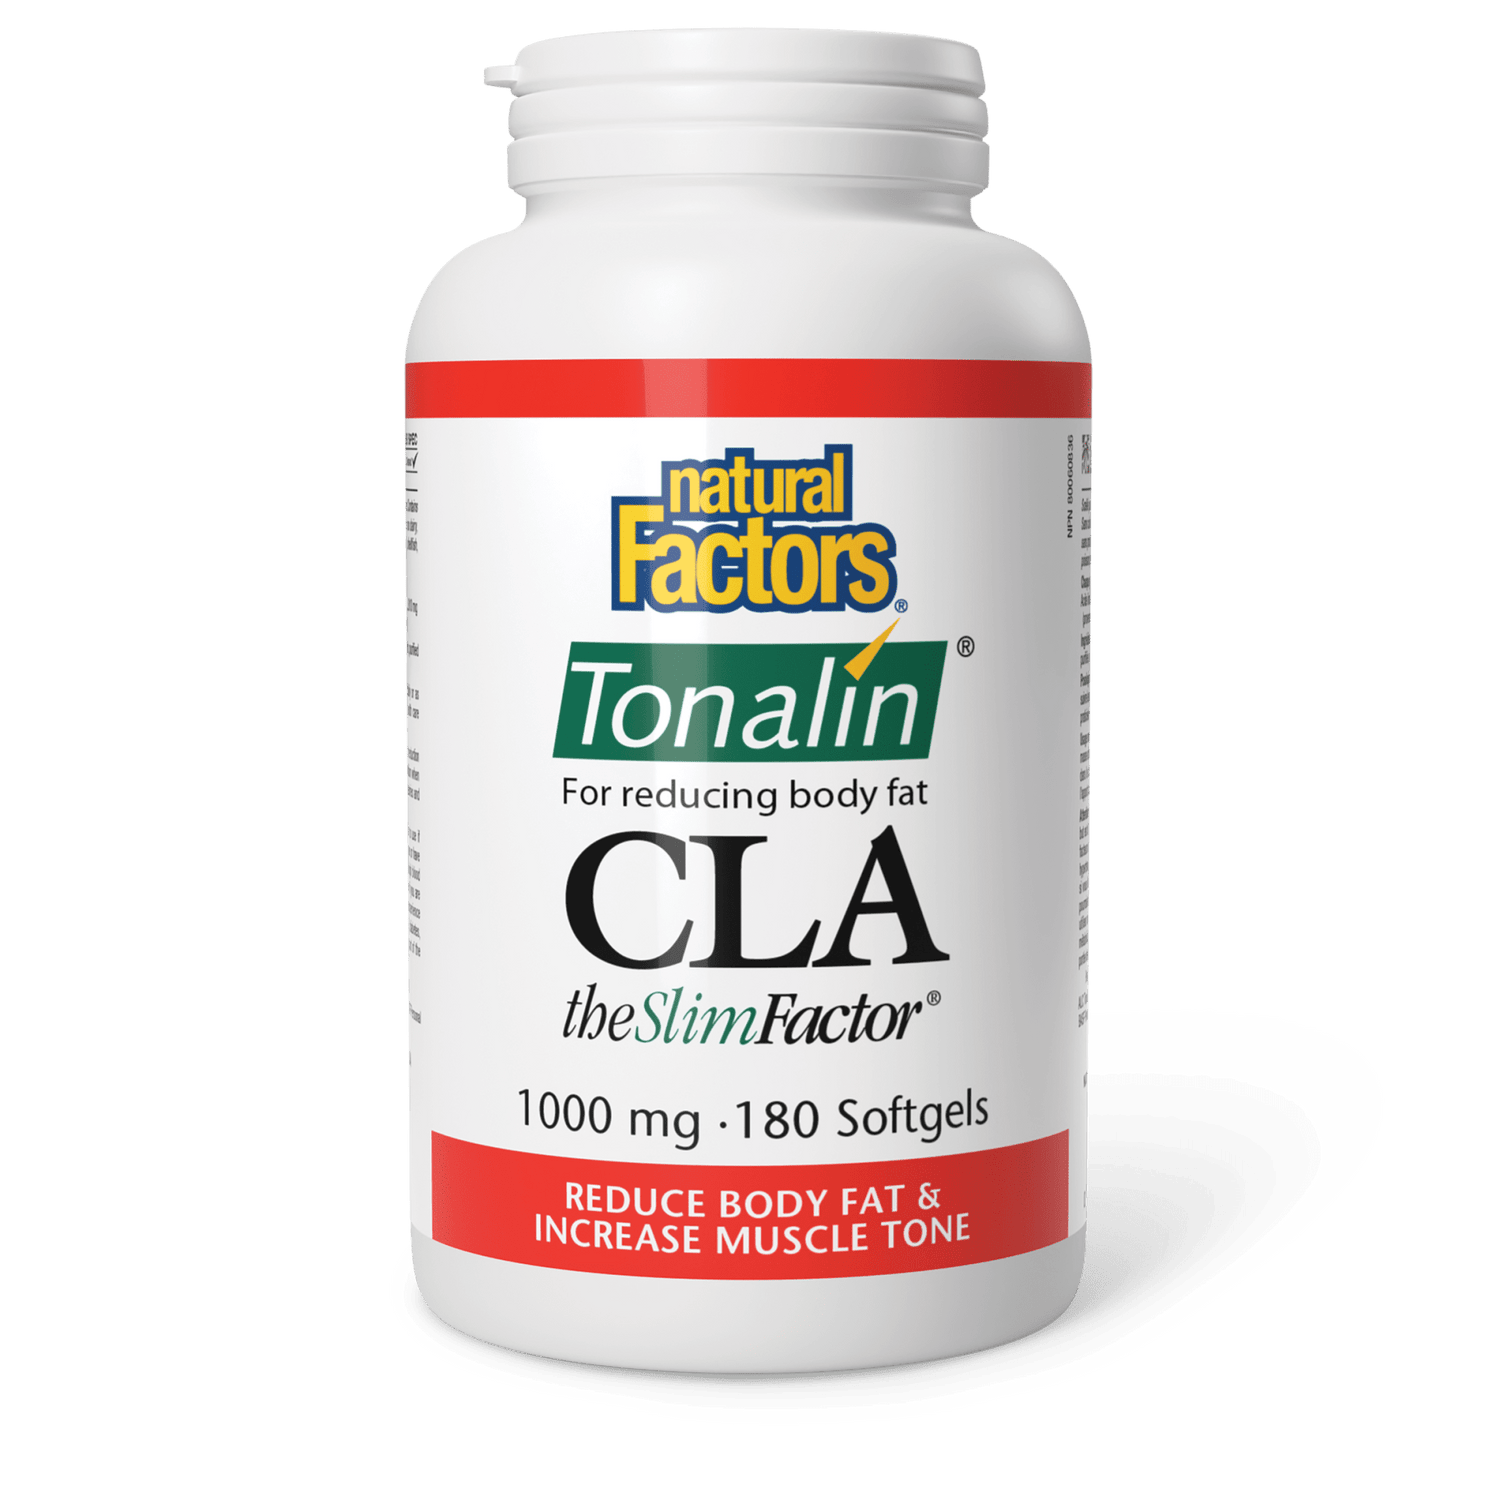 CLA Tonalin TheSlimFactor 1000 mg, Natural Factors|v|image|2047